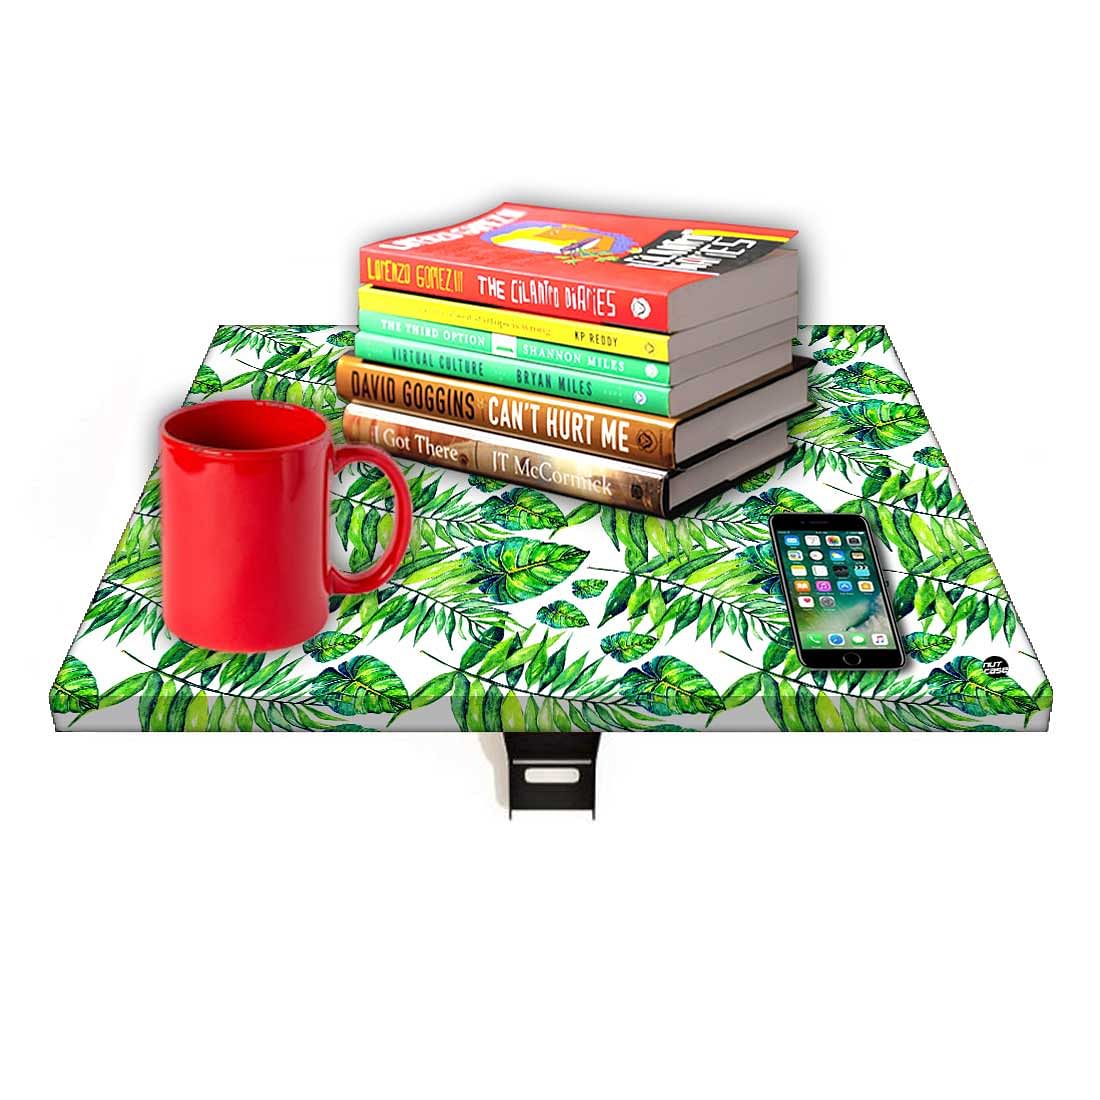 Folding Side Table for Bedroom - Dark Green Tropical Leaf Nutcase